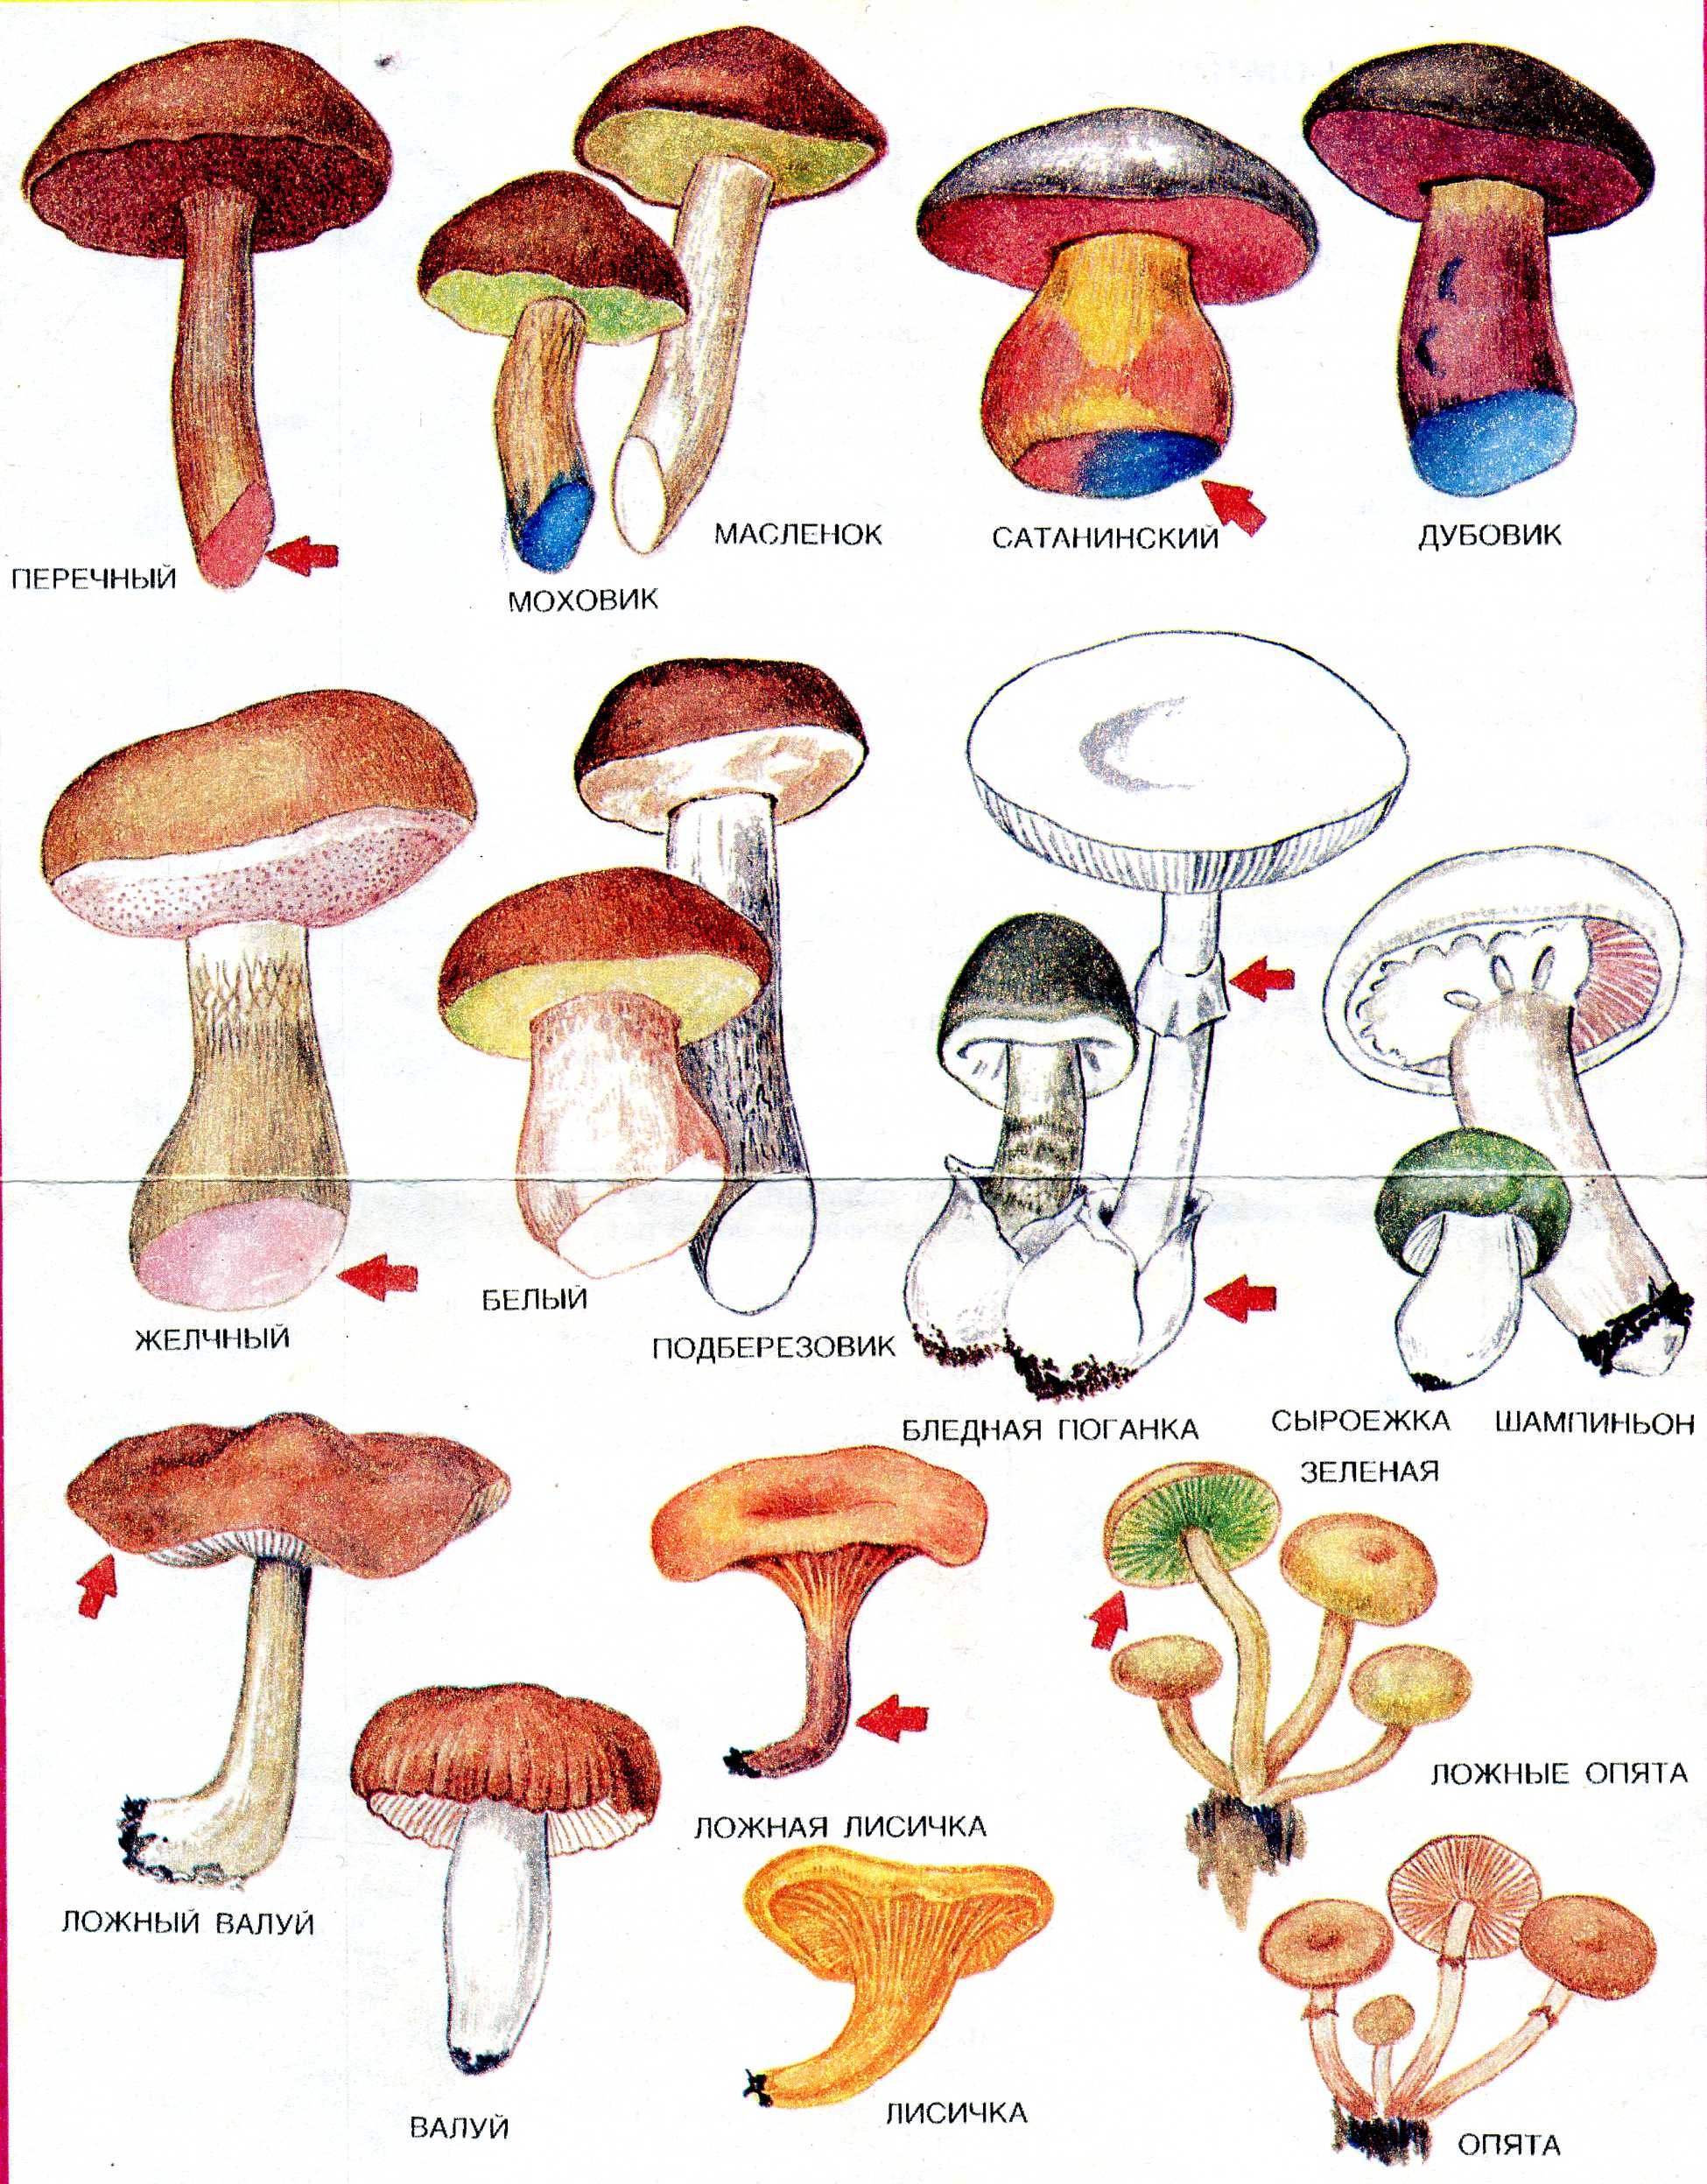 Съедобные и несъедобные грибы с названиями и описанием